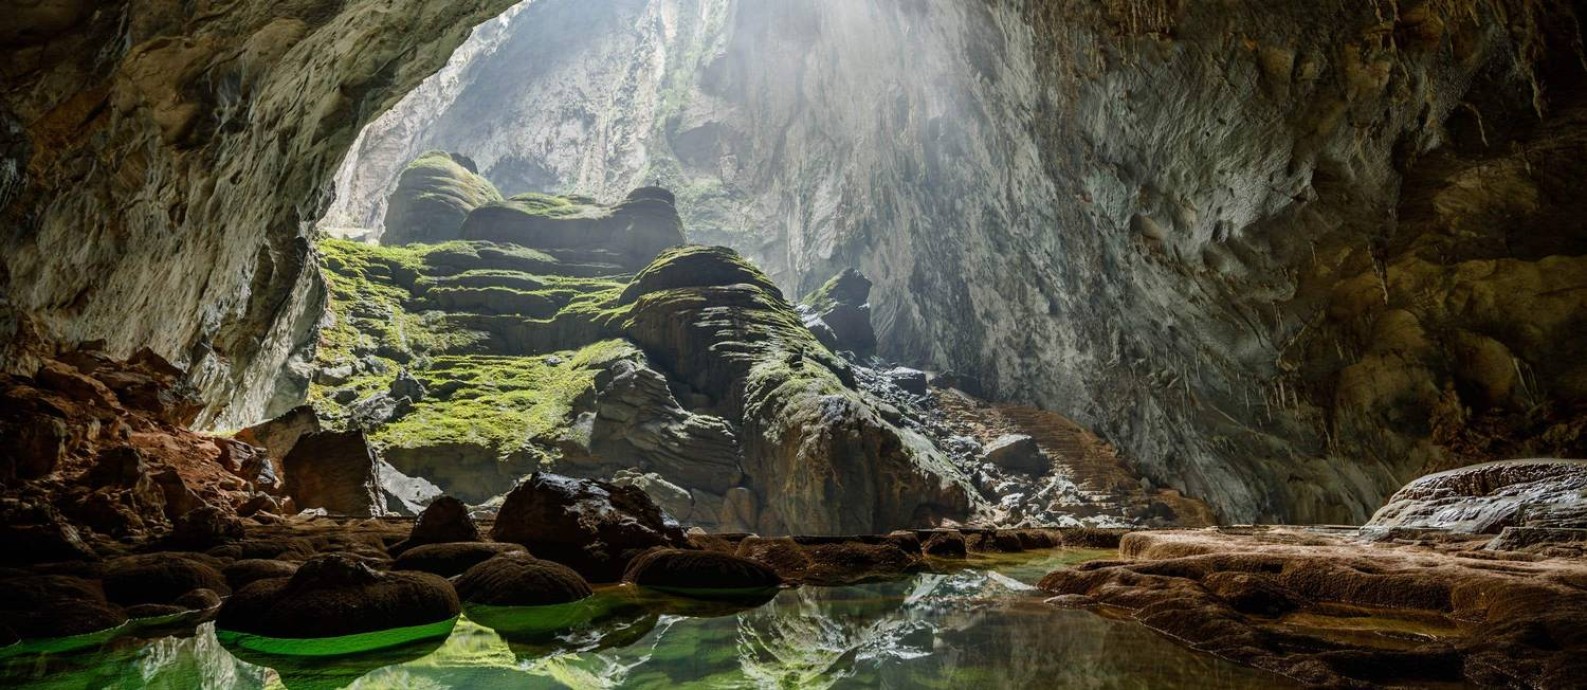 Cavernas e grutas oferecem passeios virtuais por natureza e arte ...